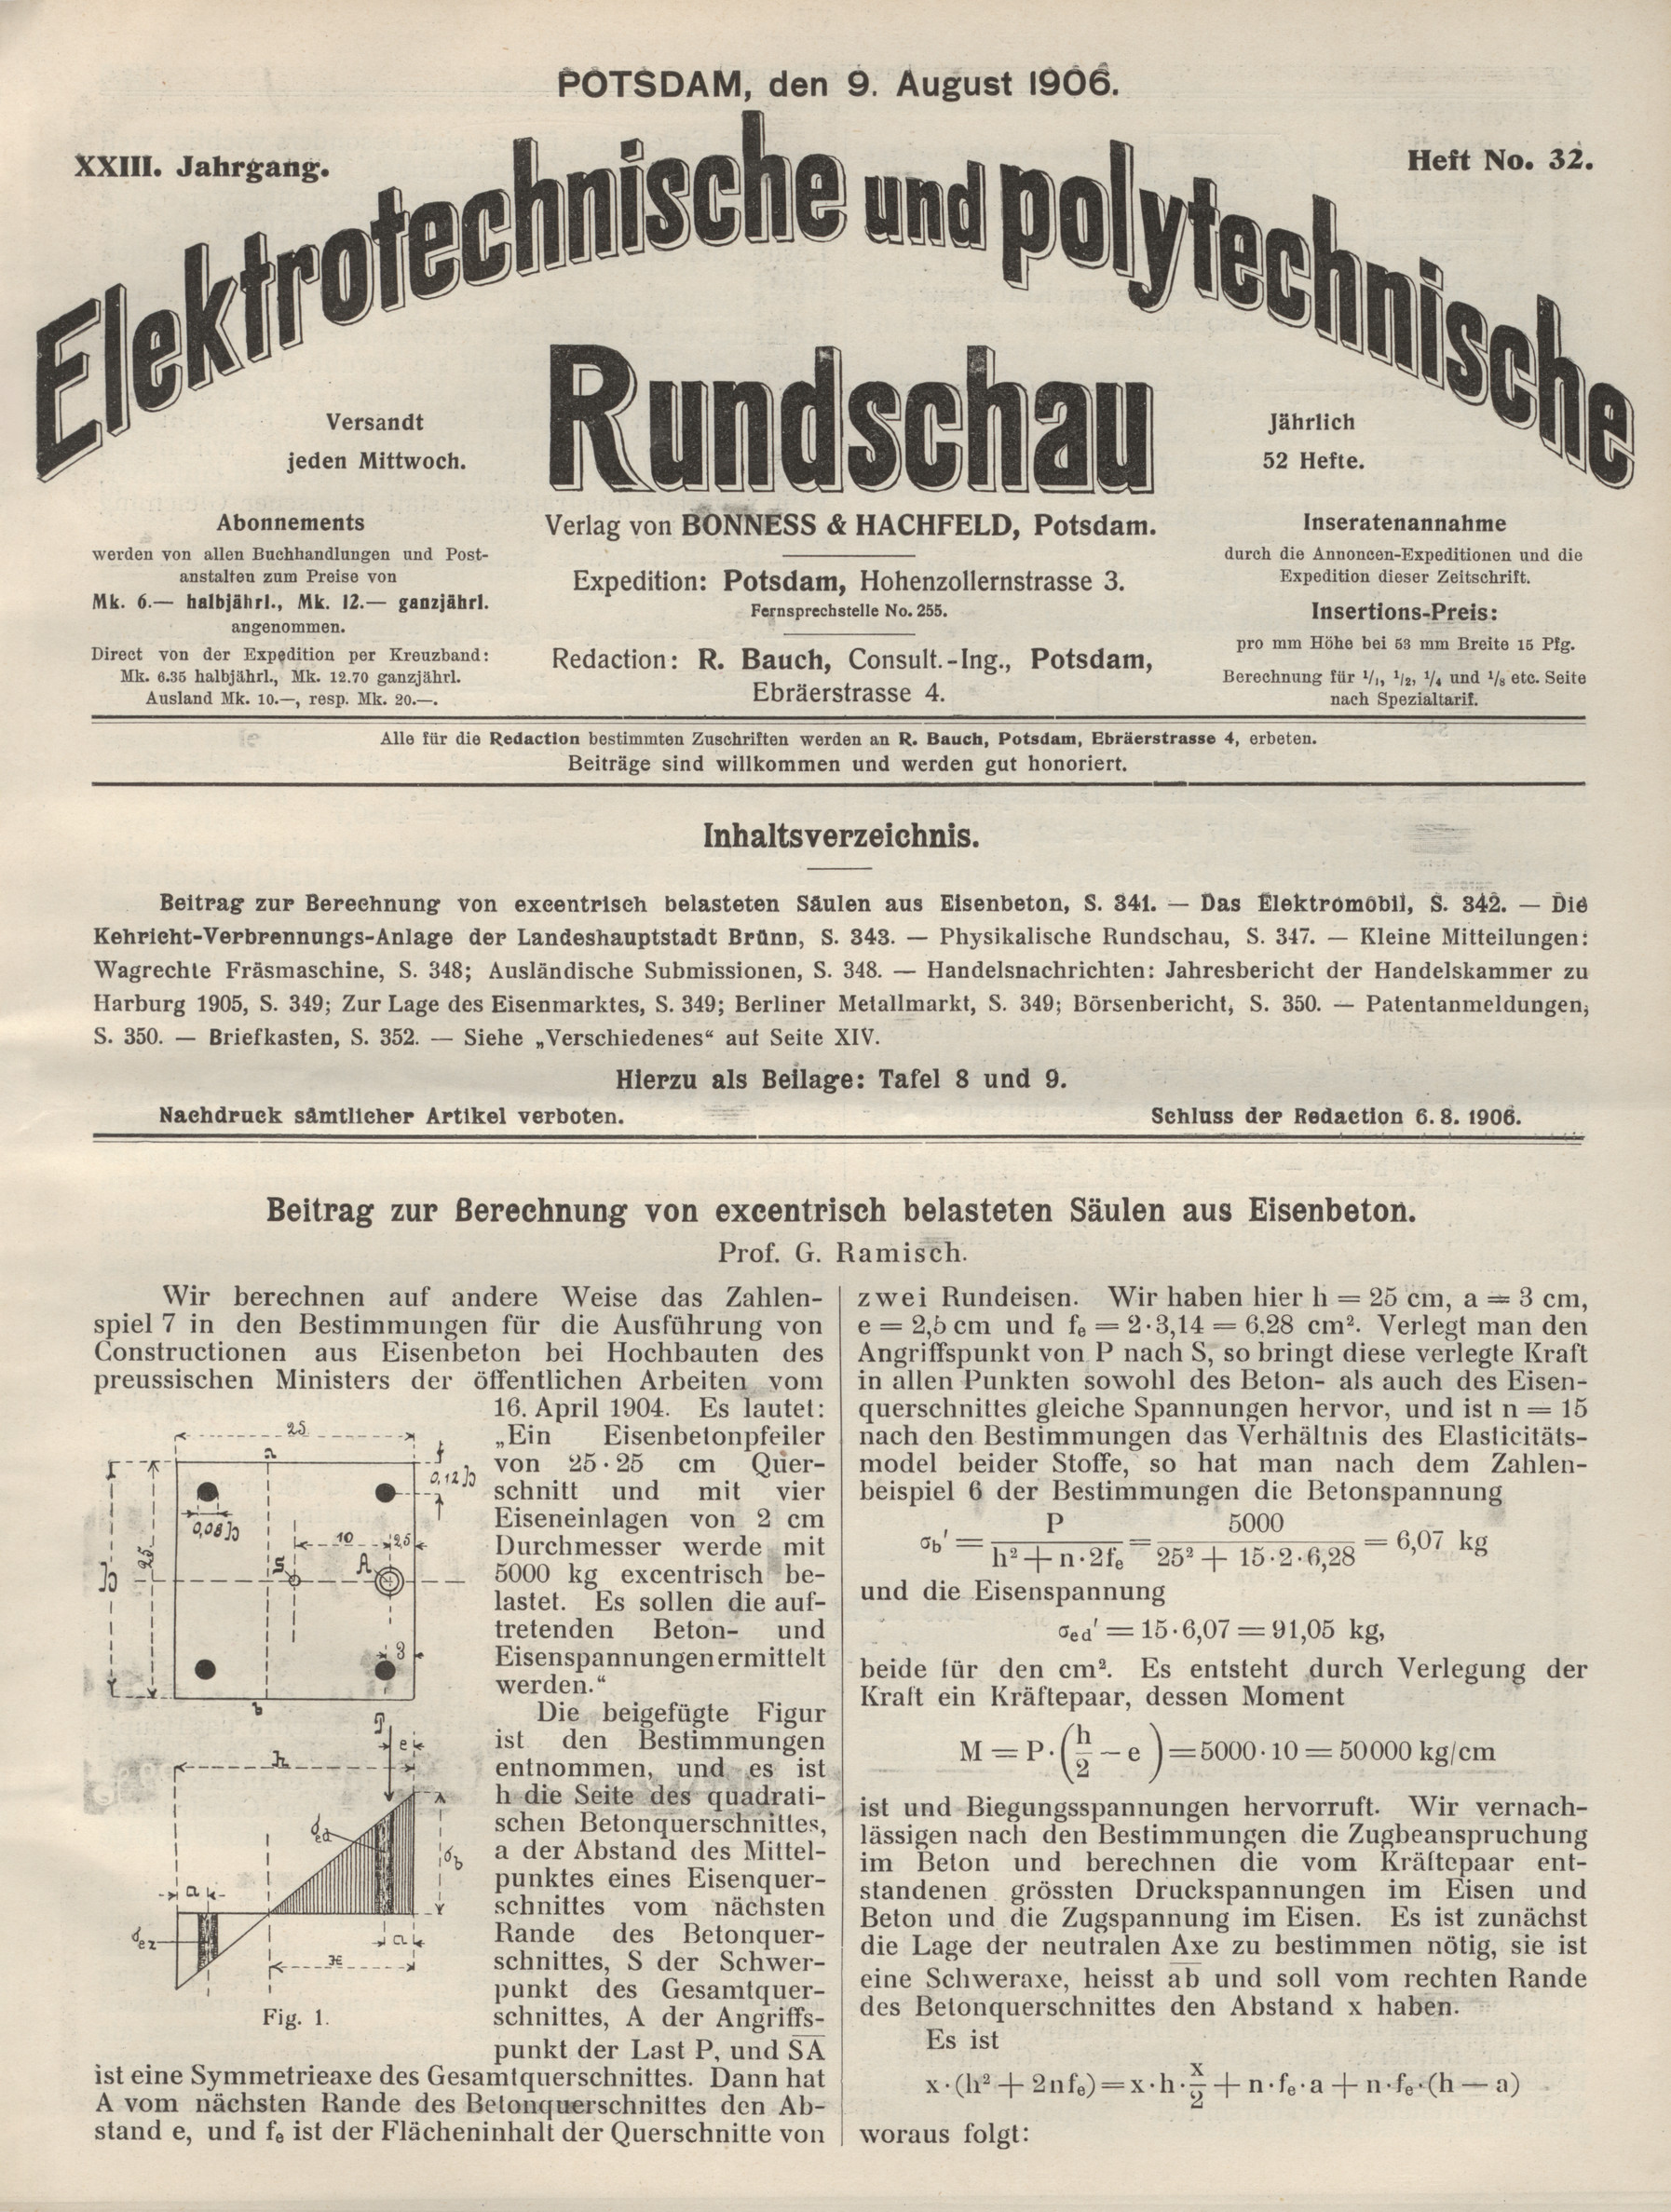 Elektrotechnische und polytechnische Rundschau, XXIII. Jahrgang, Heft No. 32